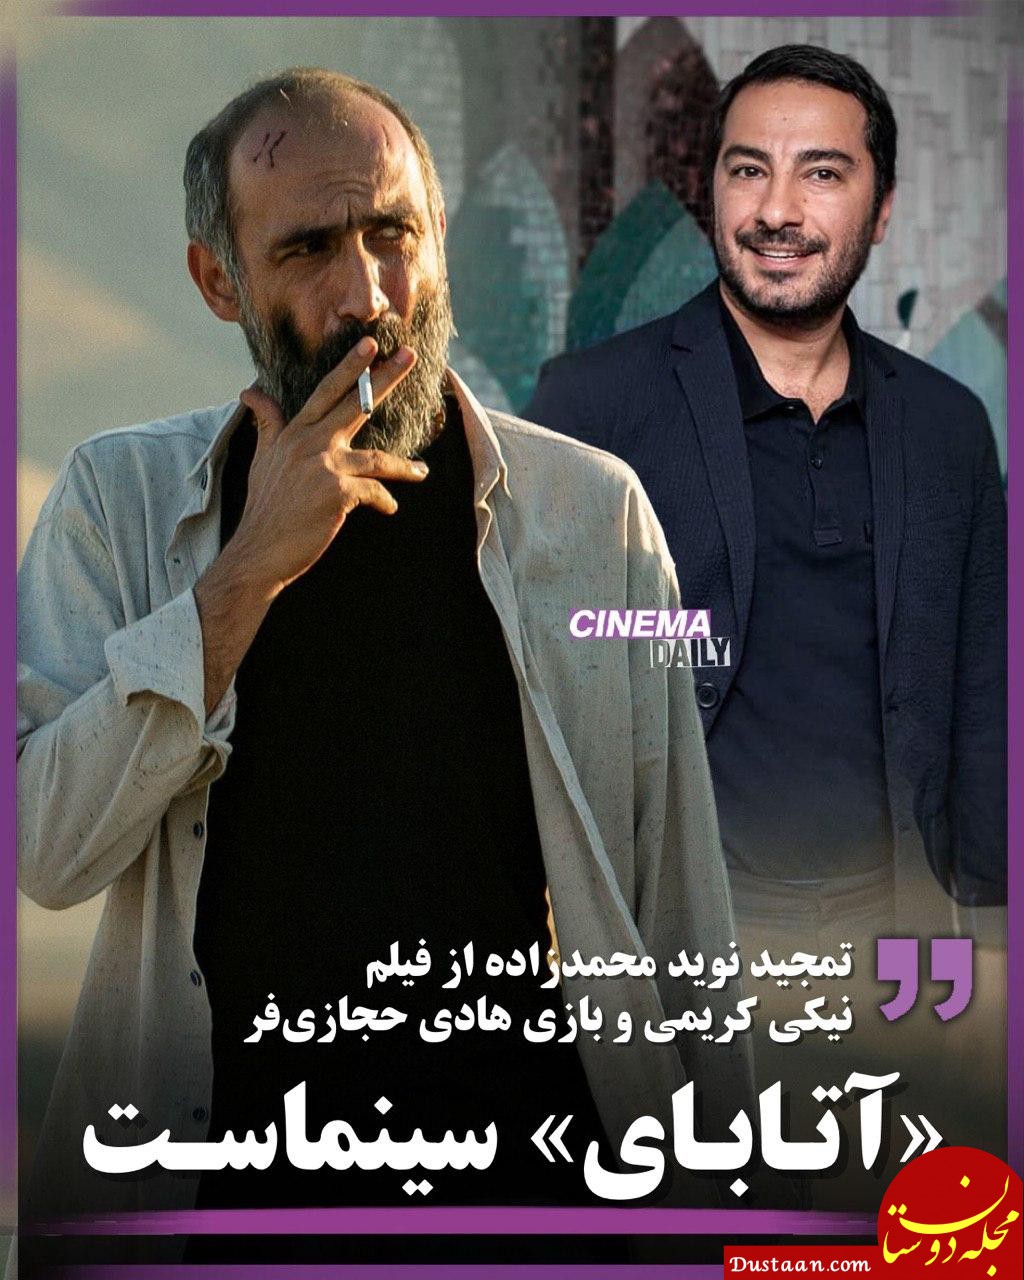 تمجید نوید محمدزاده از فیلم نیکی کریمی: «آتابای» سینماست